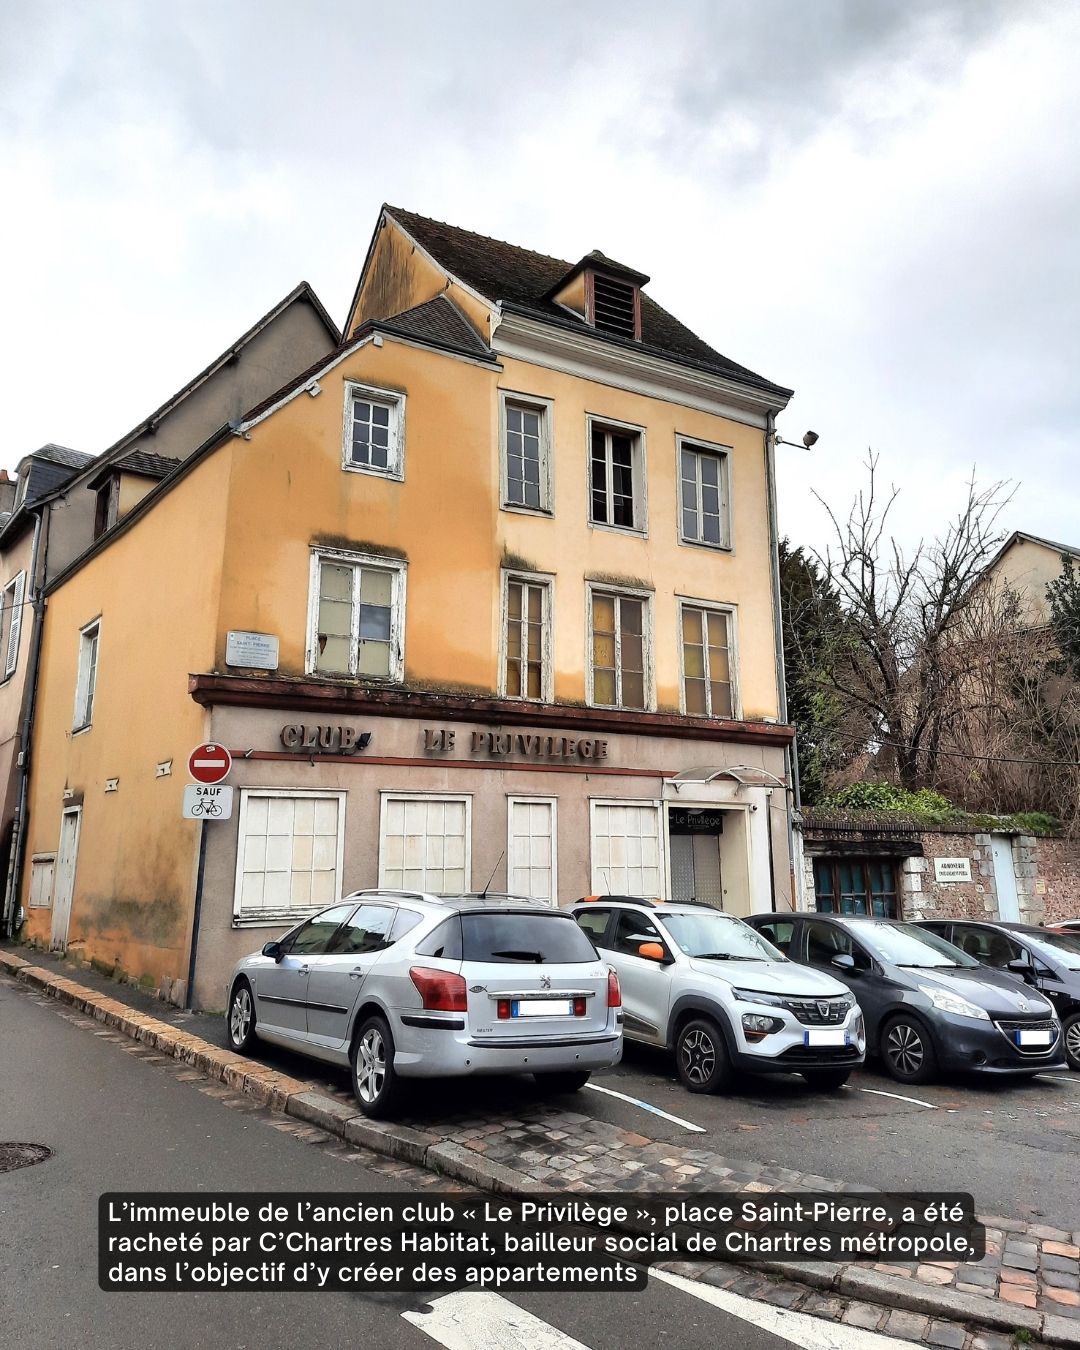 L’immeuble de l’ancien club « Le Privilège », place Saint-Pierre, a été racheté par C’Chartres Habitat, bailleur social de Chartres métropole, dans l’objectif d’y créer des appartements